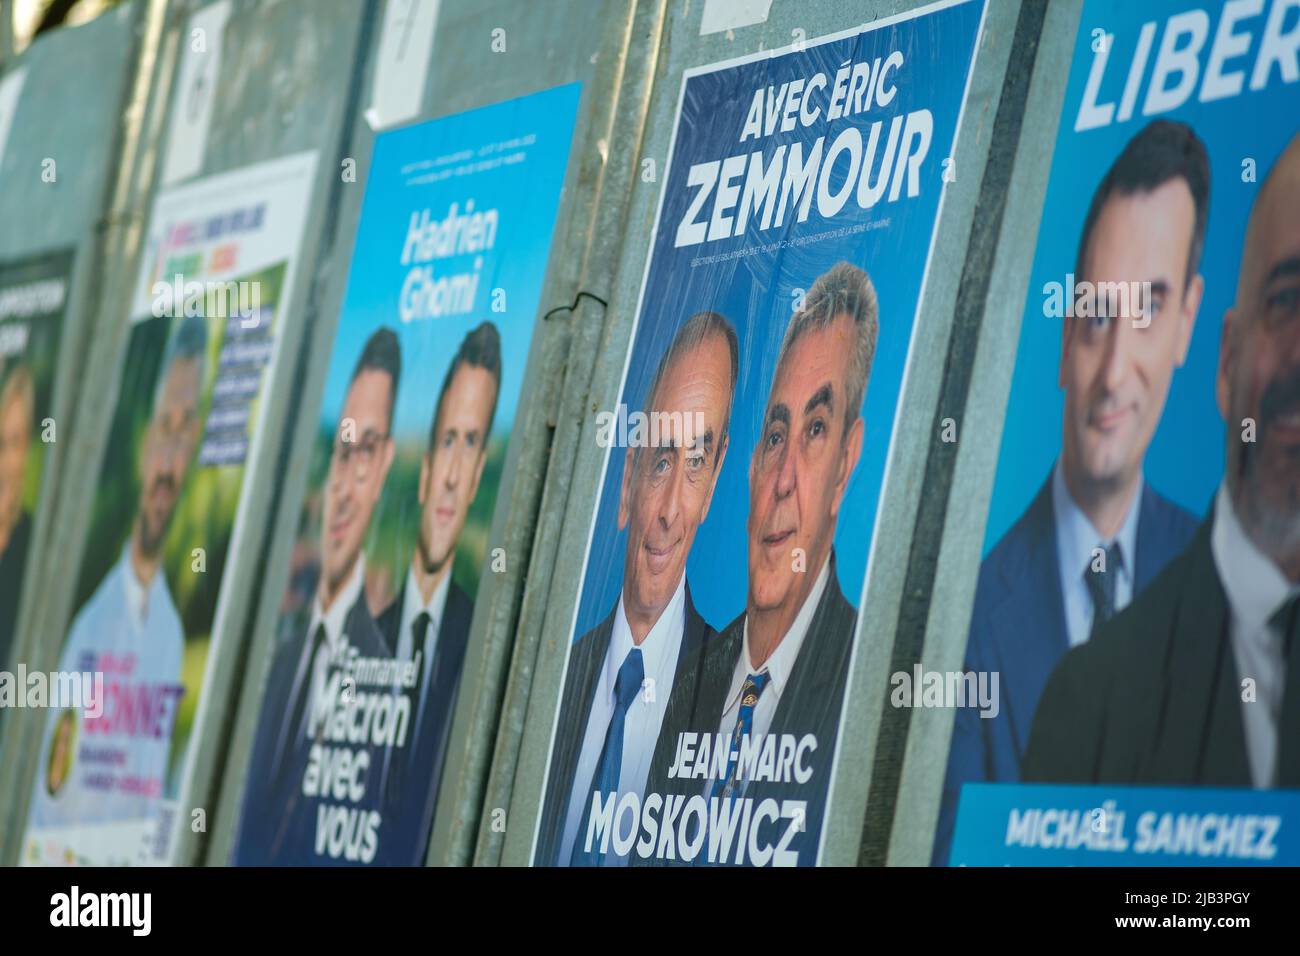 Paris, France - 2 juin 2022 : Portrait d'Eric Zemmour, Jean-Marc Moscowicz et d'autres dirigeants politiques sur une affiche de campagne à Paris Banque D'Images